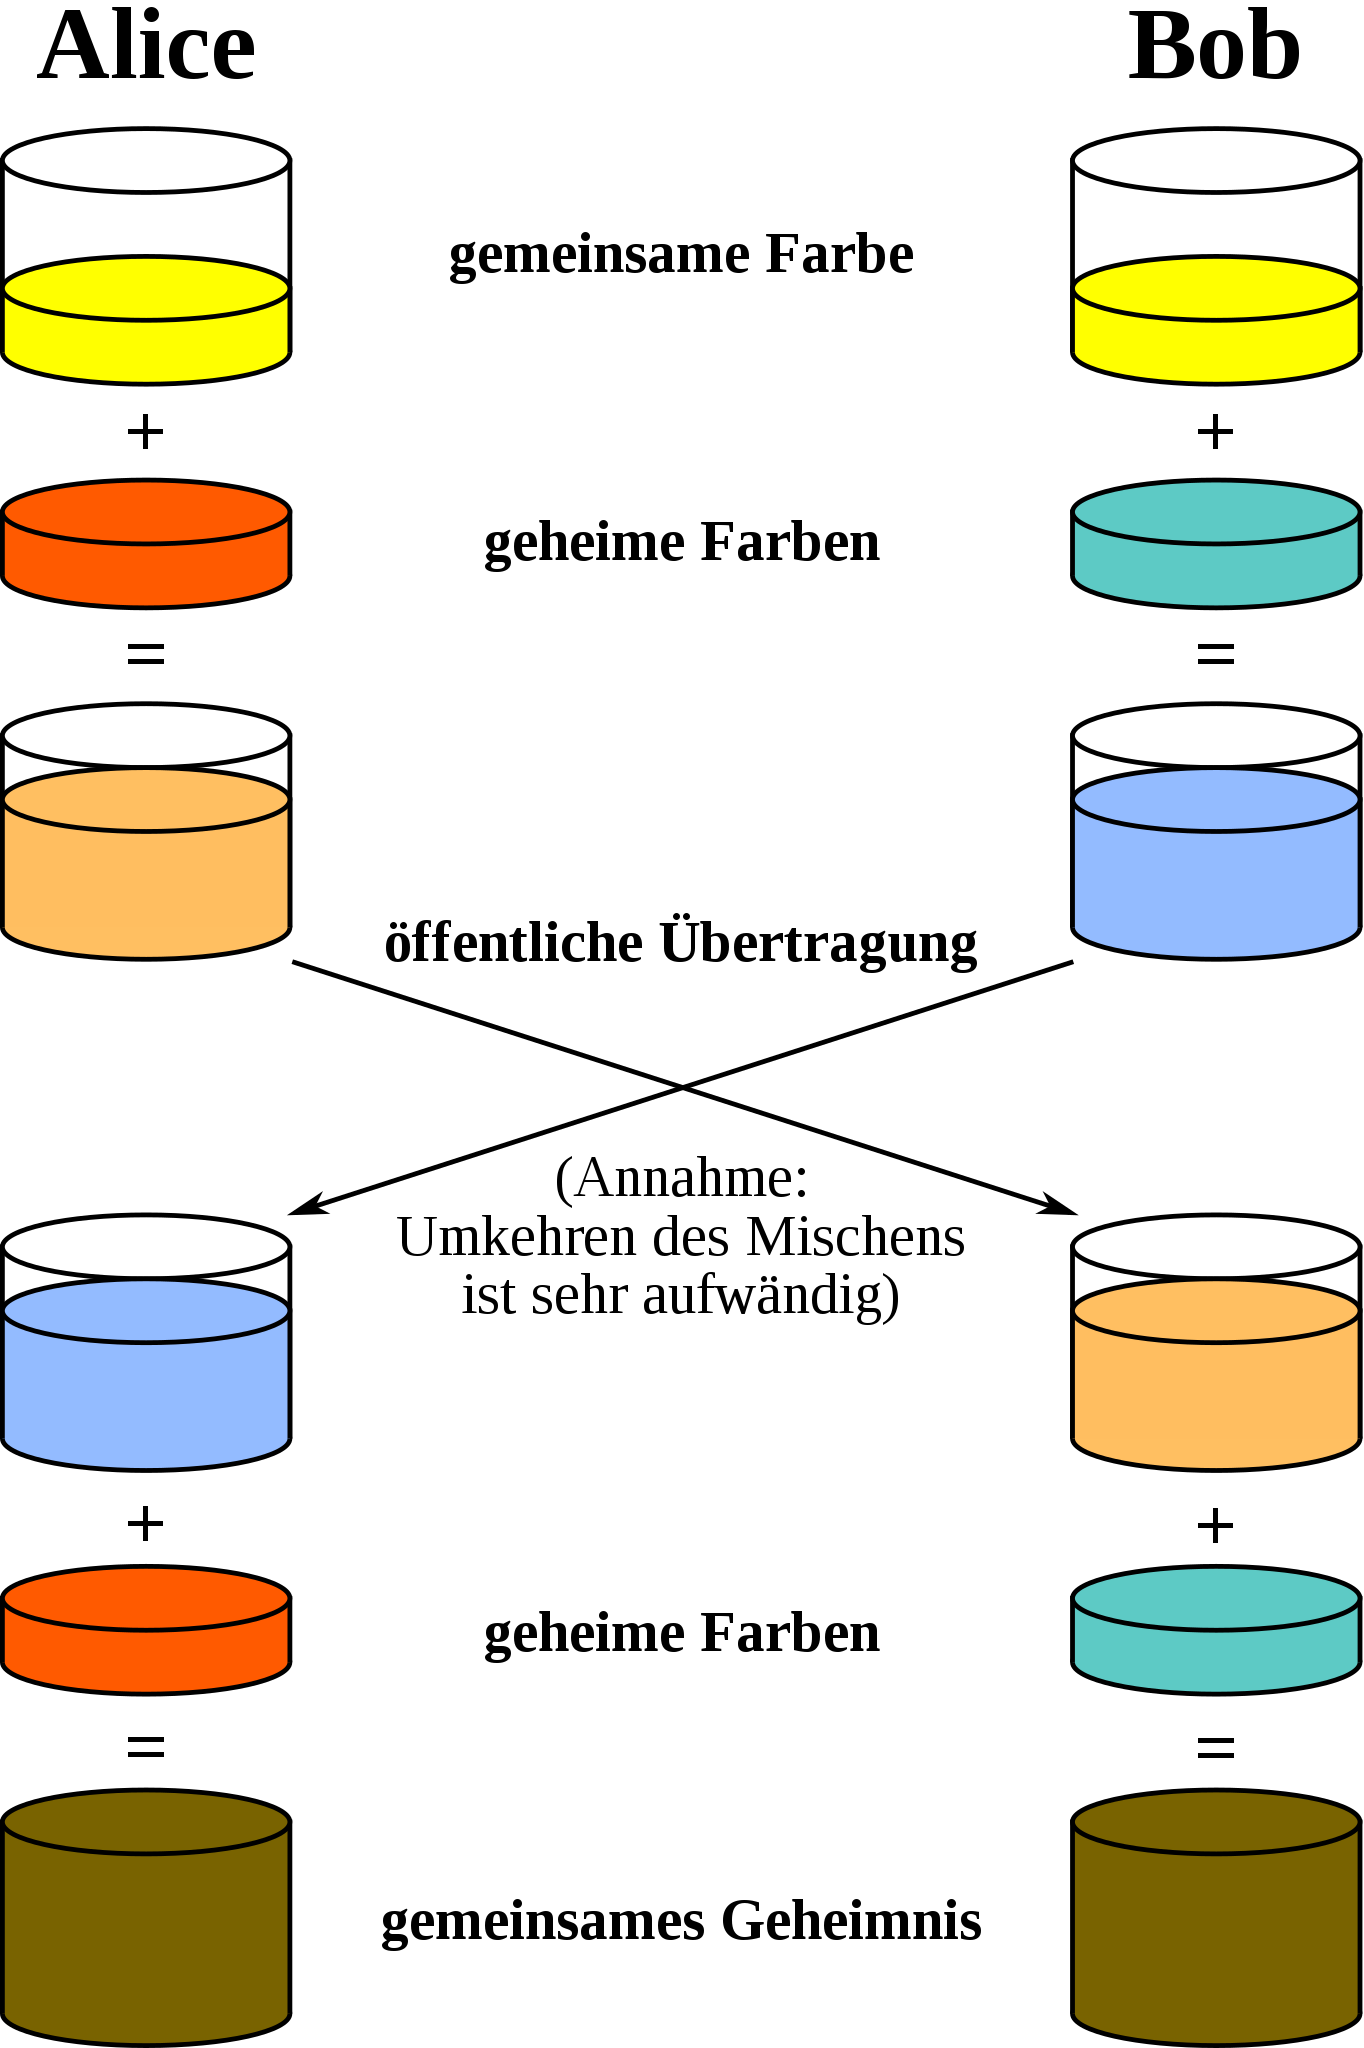 Anschauliche Erklärung des Diffie-Hellman-Algorithmus mit Farbeimern